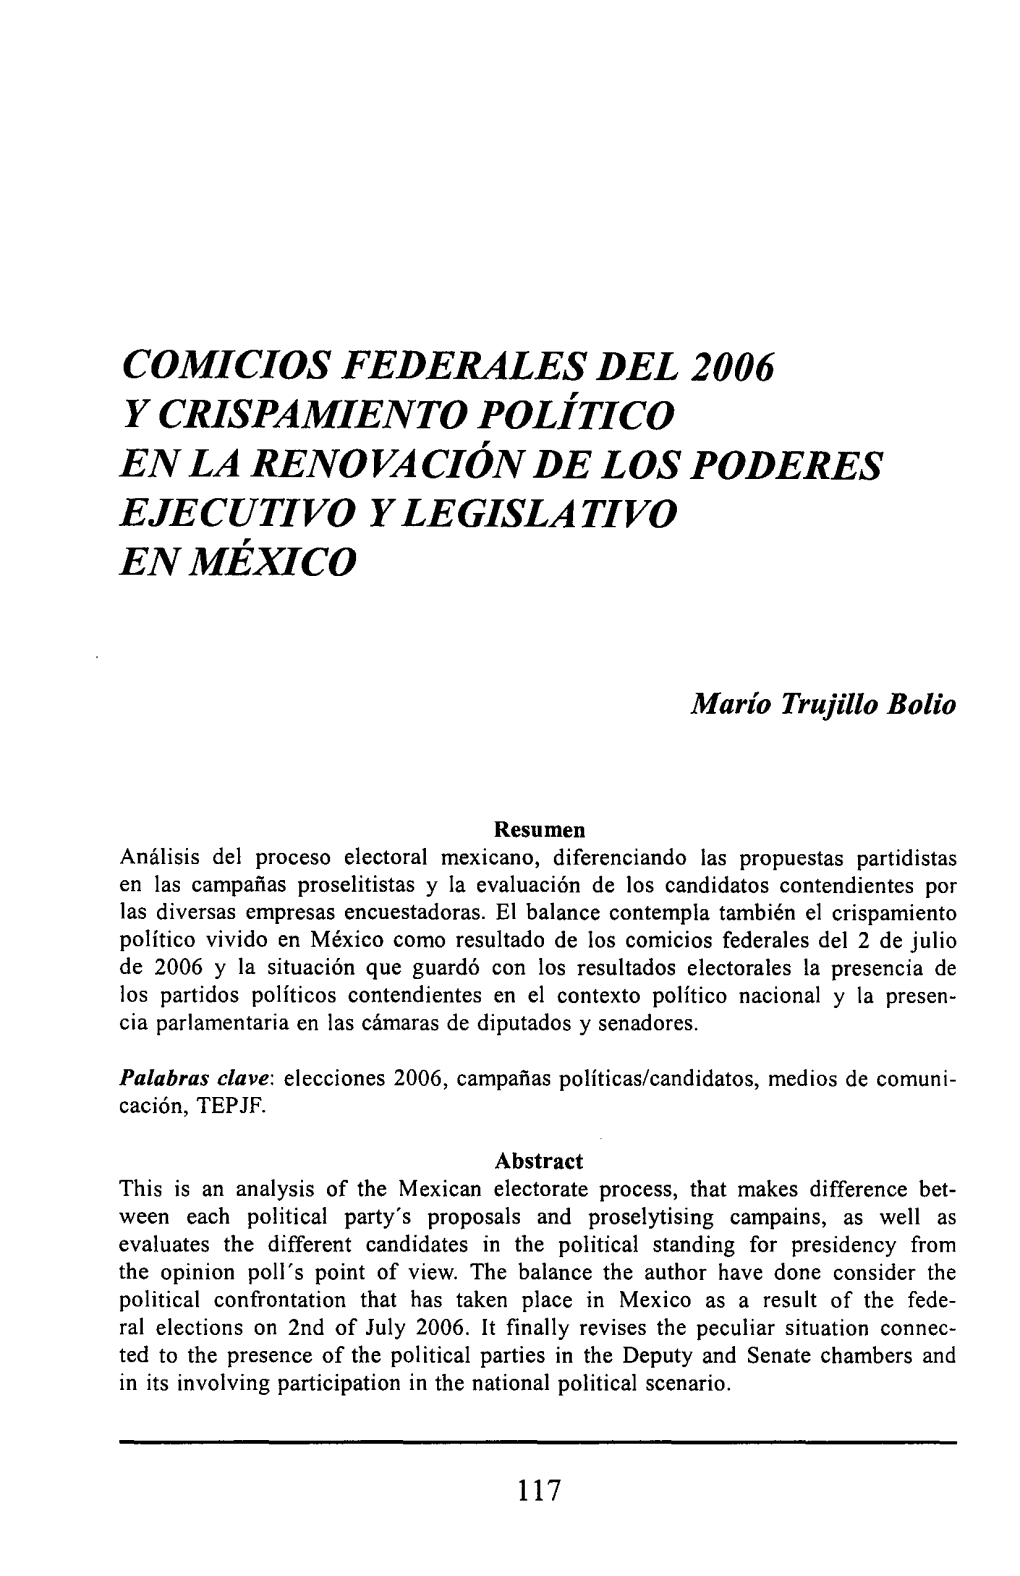 Comicios Federales Del 2006 Y Crispamiento Político En La Renovación De Los Poderes Ejecutivo Y Legislativo En México